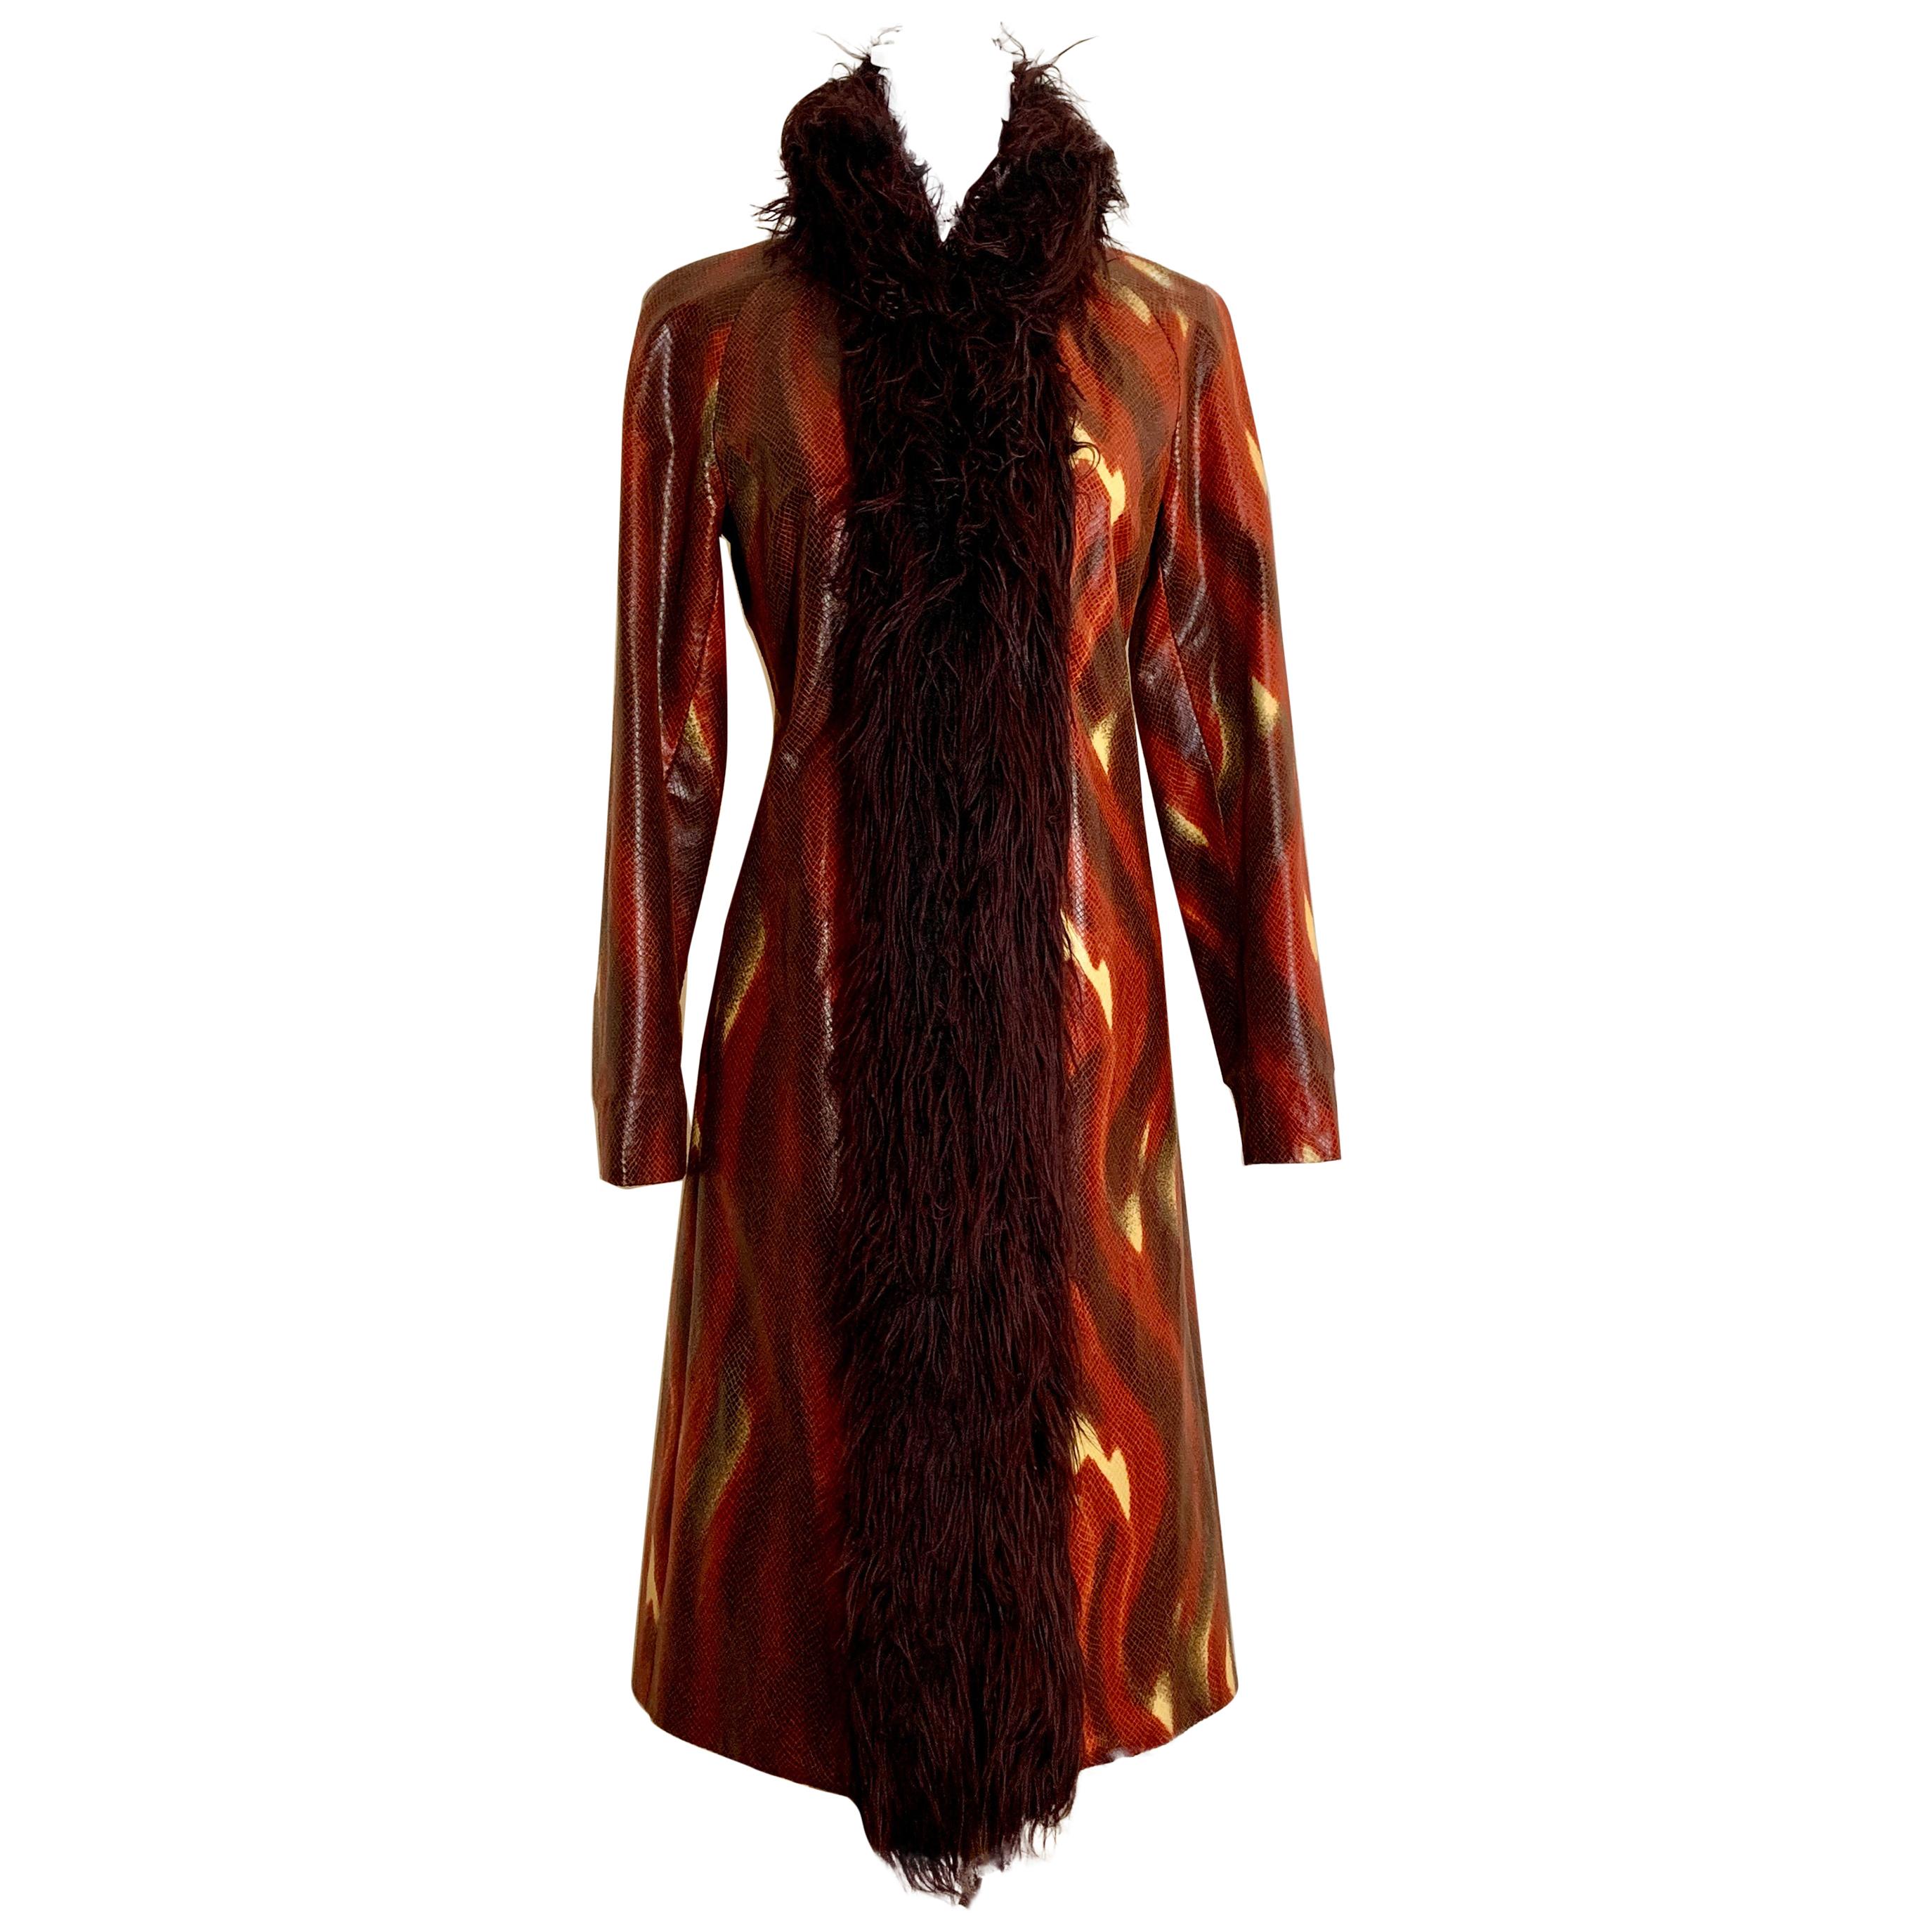 Vivienne Tam Vintage Flame Print Faux Snakeskin & Faux Fur Long Coat, 1990s